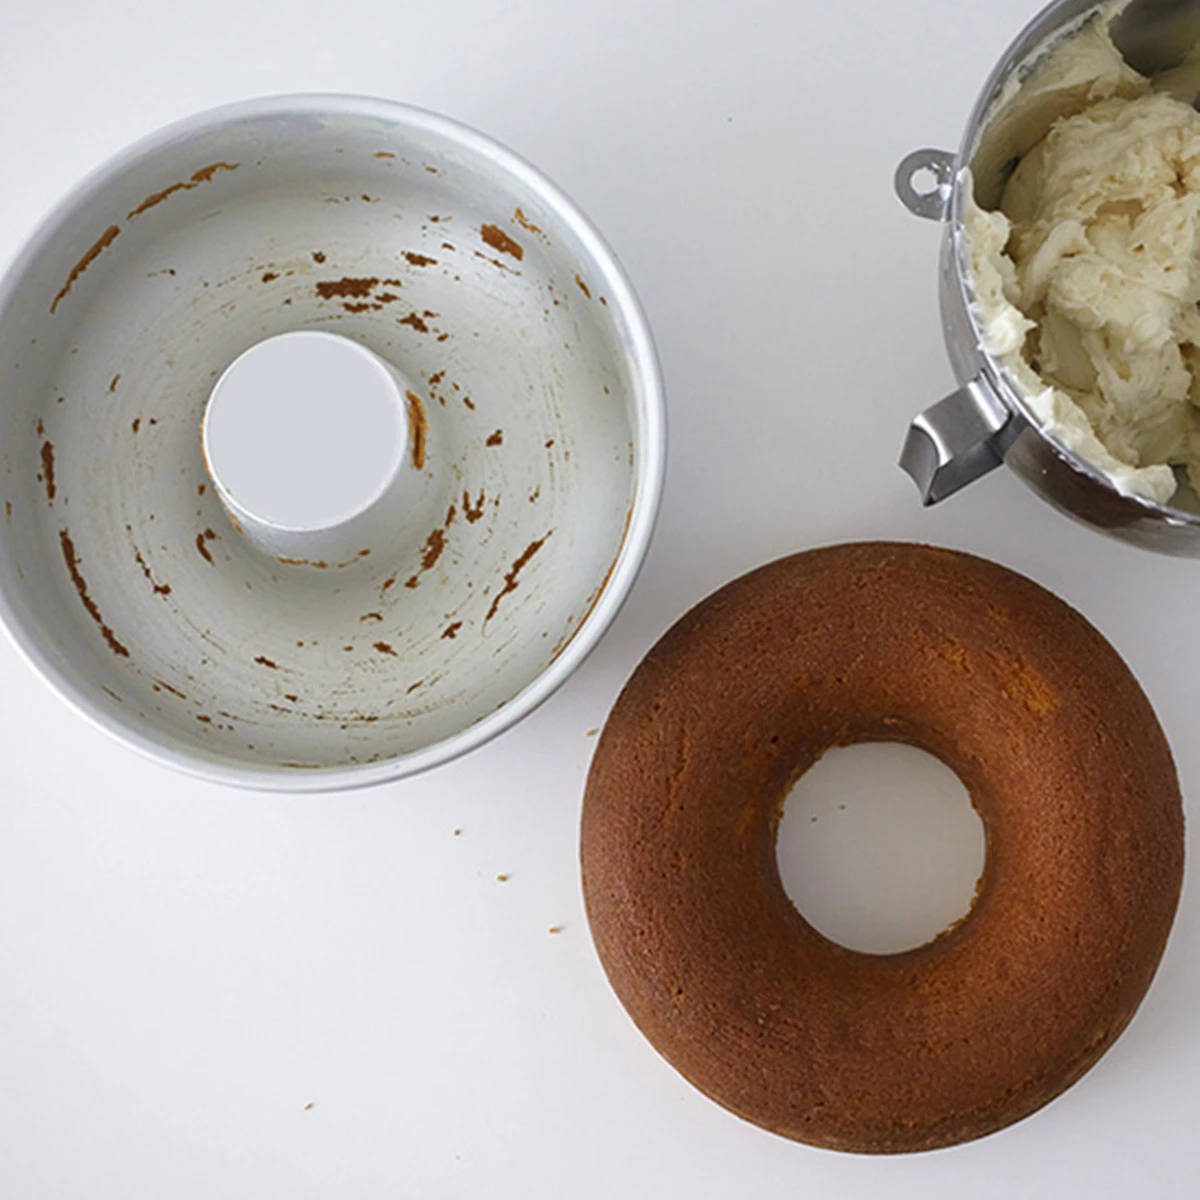 Aomily DIY Форма для пудинга, торта, форма для пончиков, анодированная форма из алюминиевого сплава, кухонная форма для выпечки, украшения для выпечки, жестяное кольцо, инструменты для выпечки